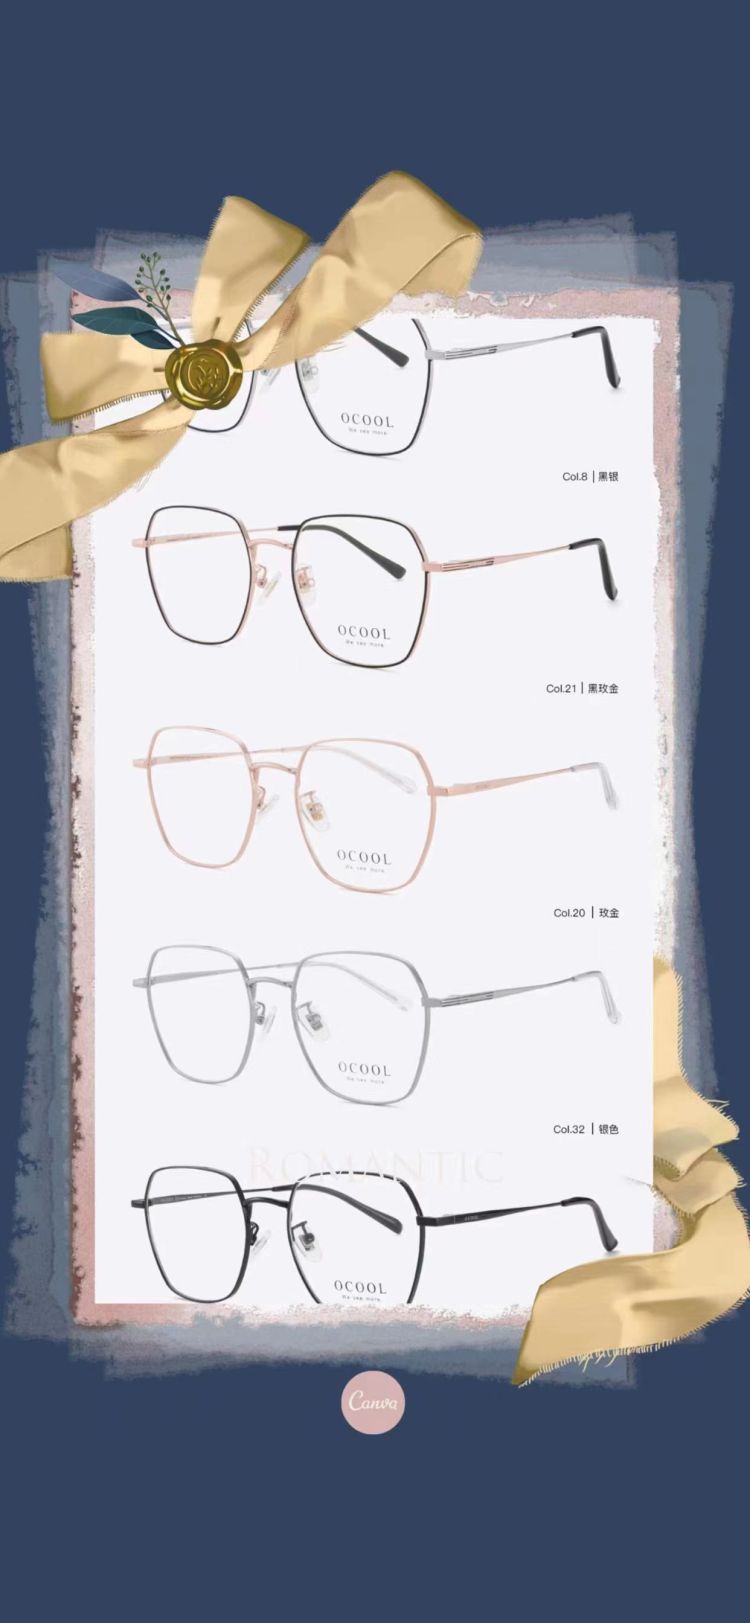 ocool眼镜-内蒙古自治区·乌海市·海勃湾区-ocool品牌眼镜  轻奢 高佣 一件带发 粉丝500+达人-代理  一件代发 轻奢 有意快来报名